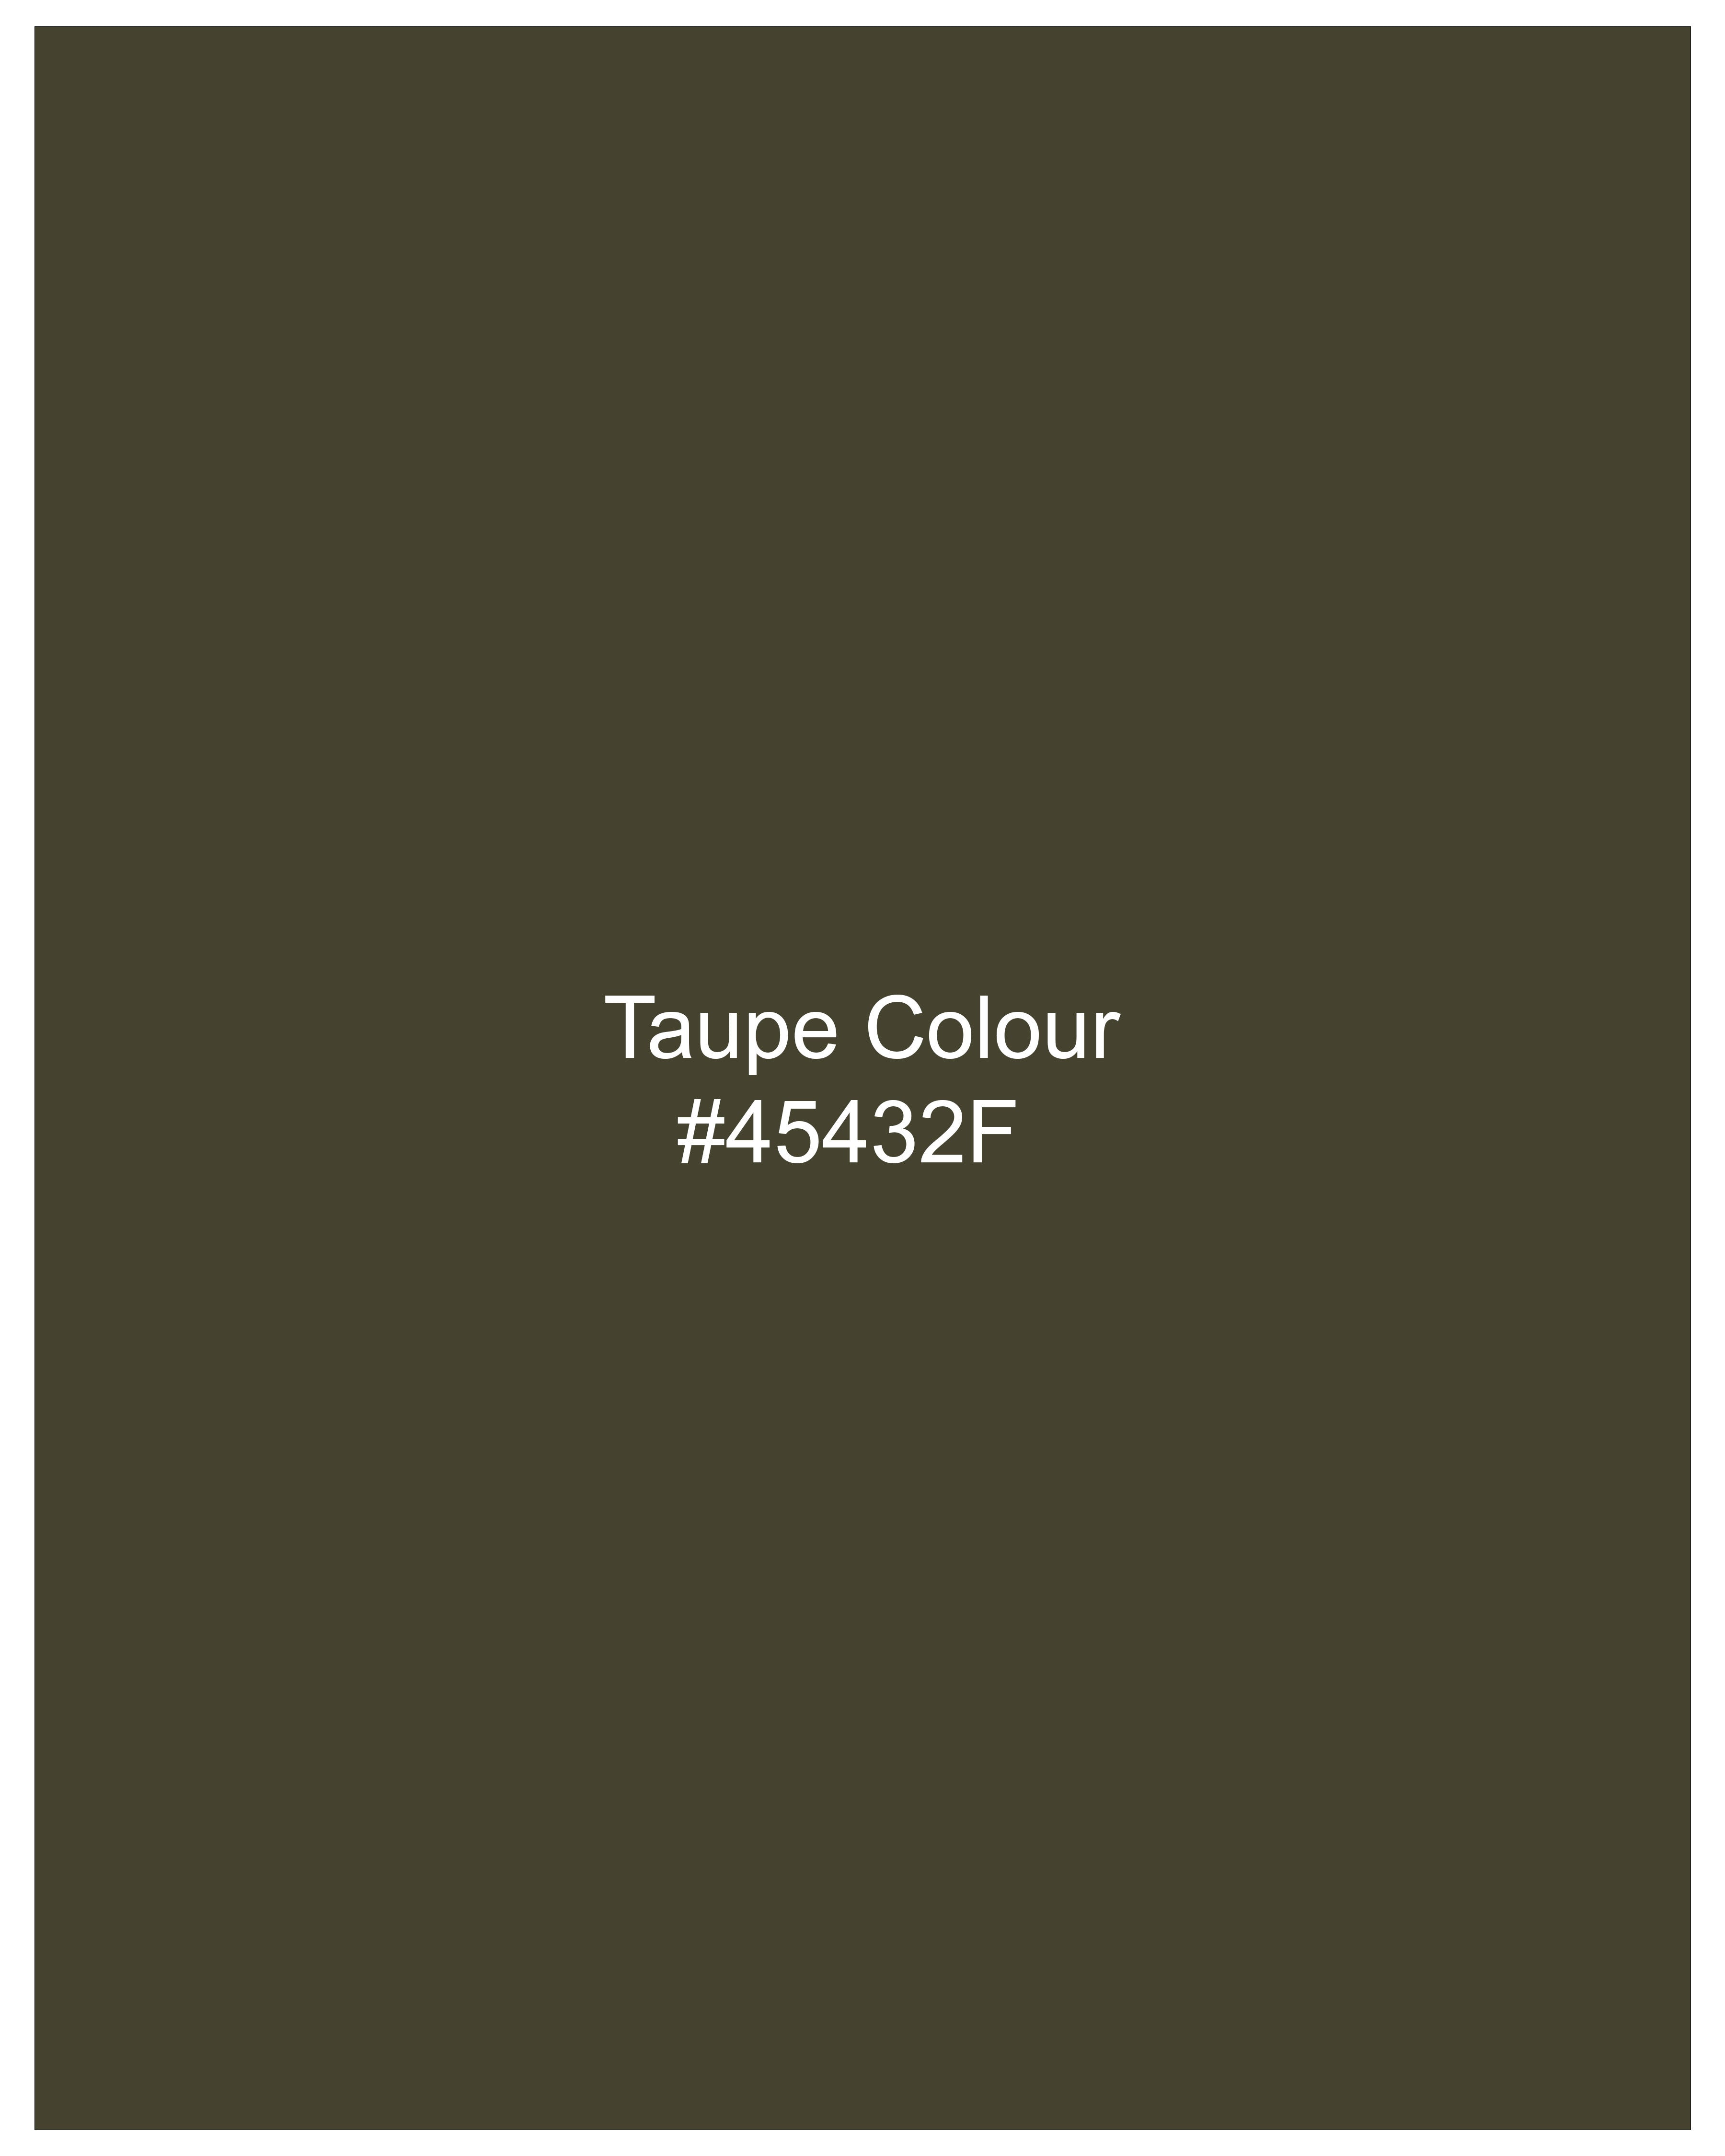 Taupe Green Solid Premium Cotton Nehru Jacket WC2644-36, WC2644-38, WC2644-40, WC2644-42, WC2644-44, WC2644-46, WC2644-48, WC2644-50, WC2644-52, WC2644-54, WC2644-56, WC2644-58, WC2644-60